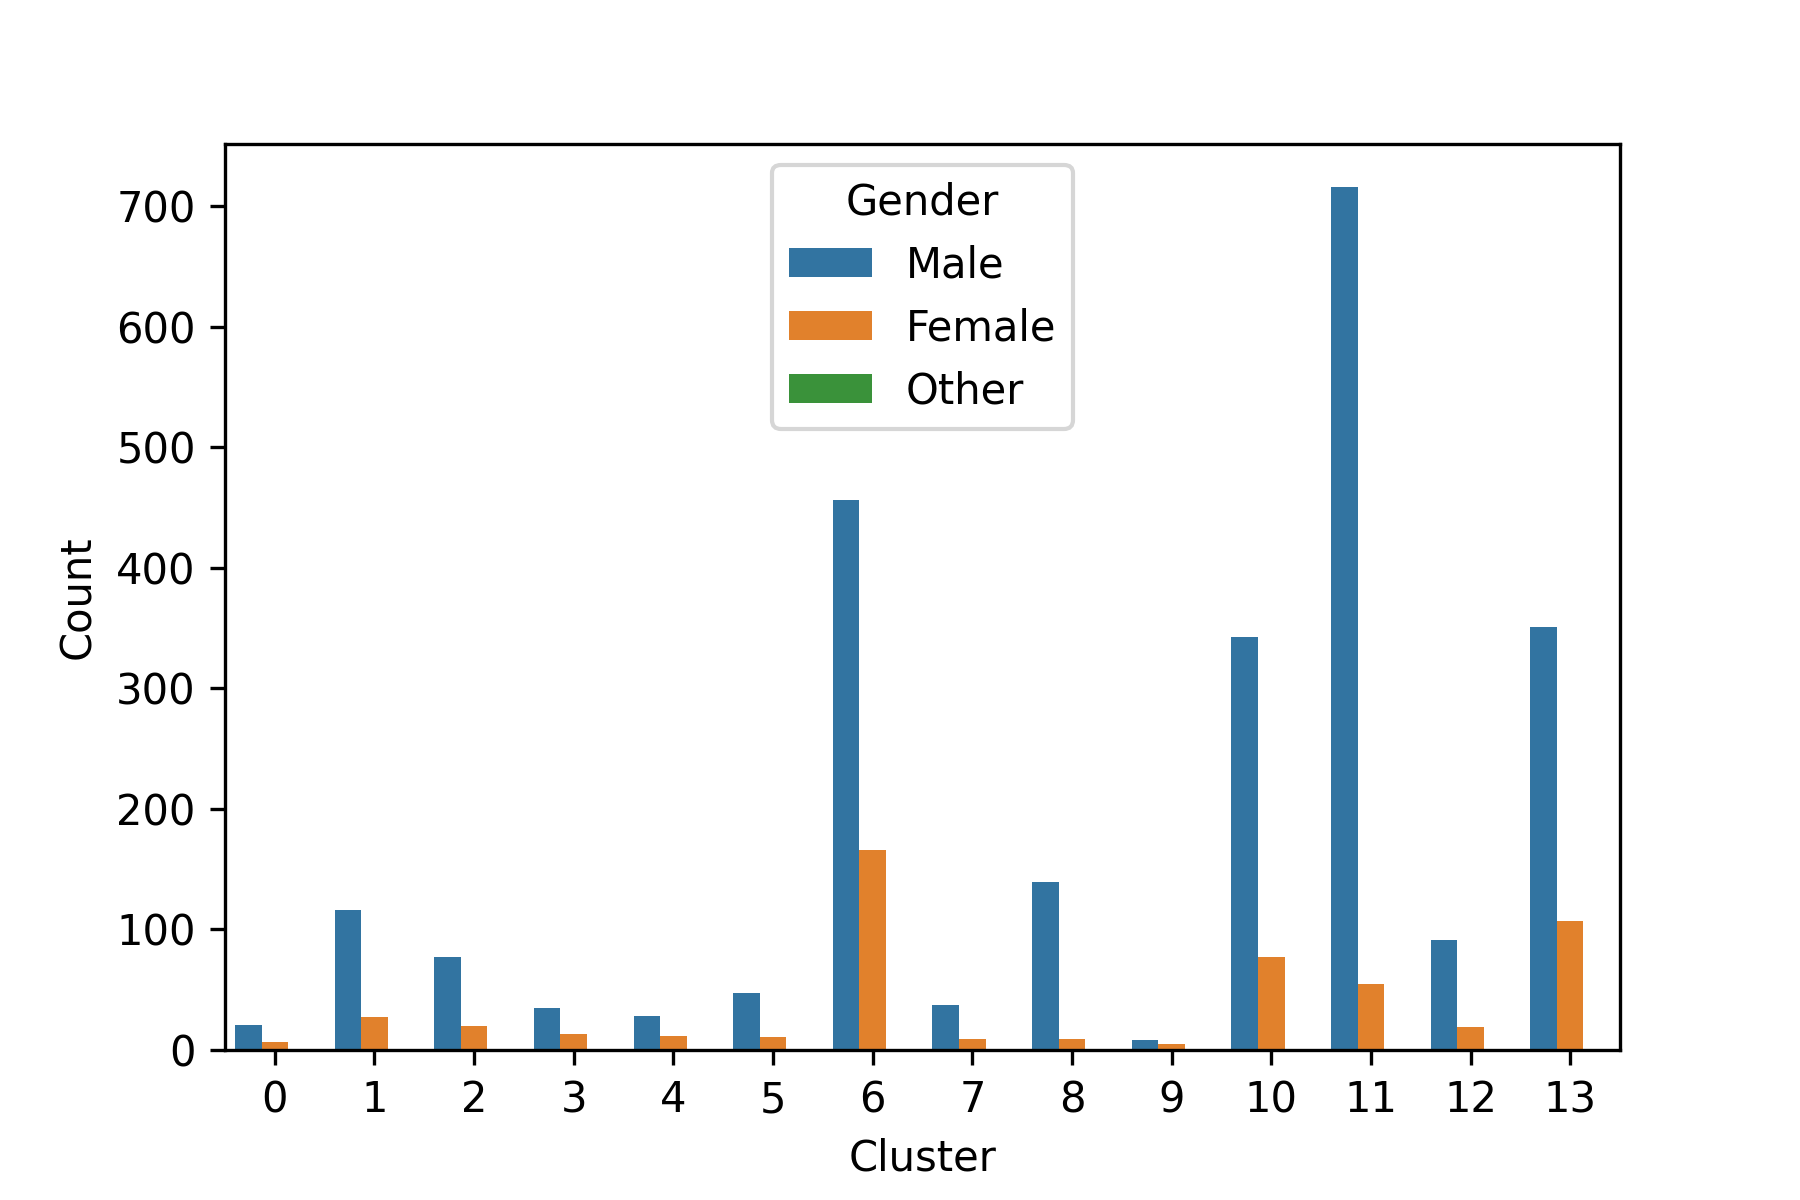 Gender in clusters